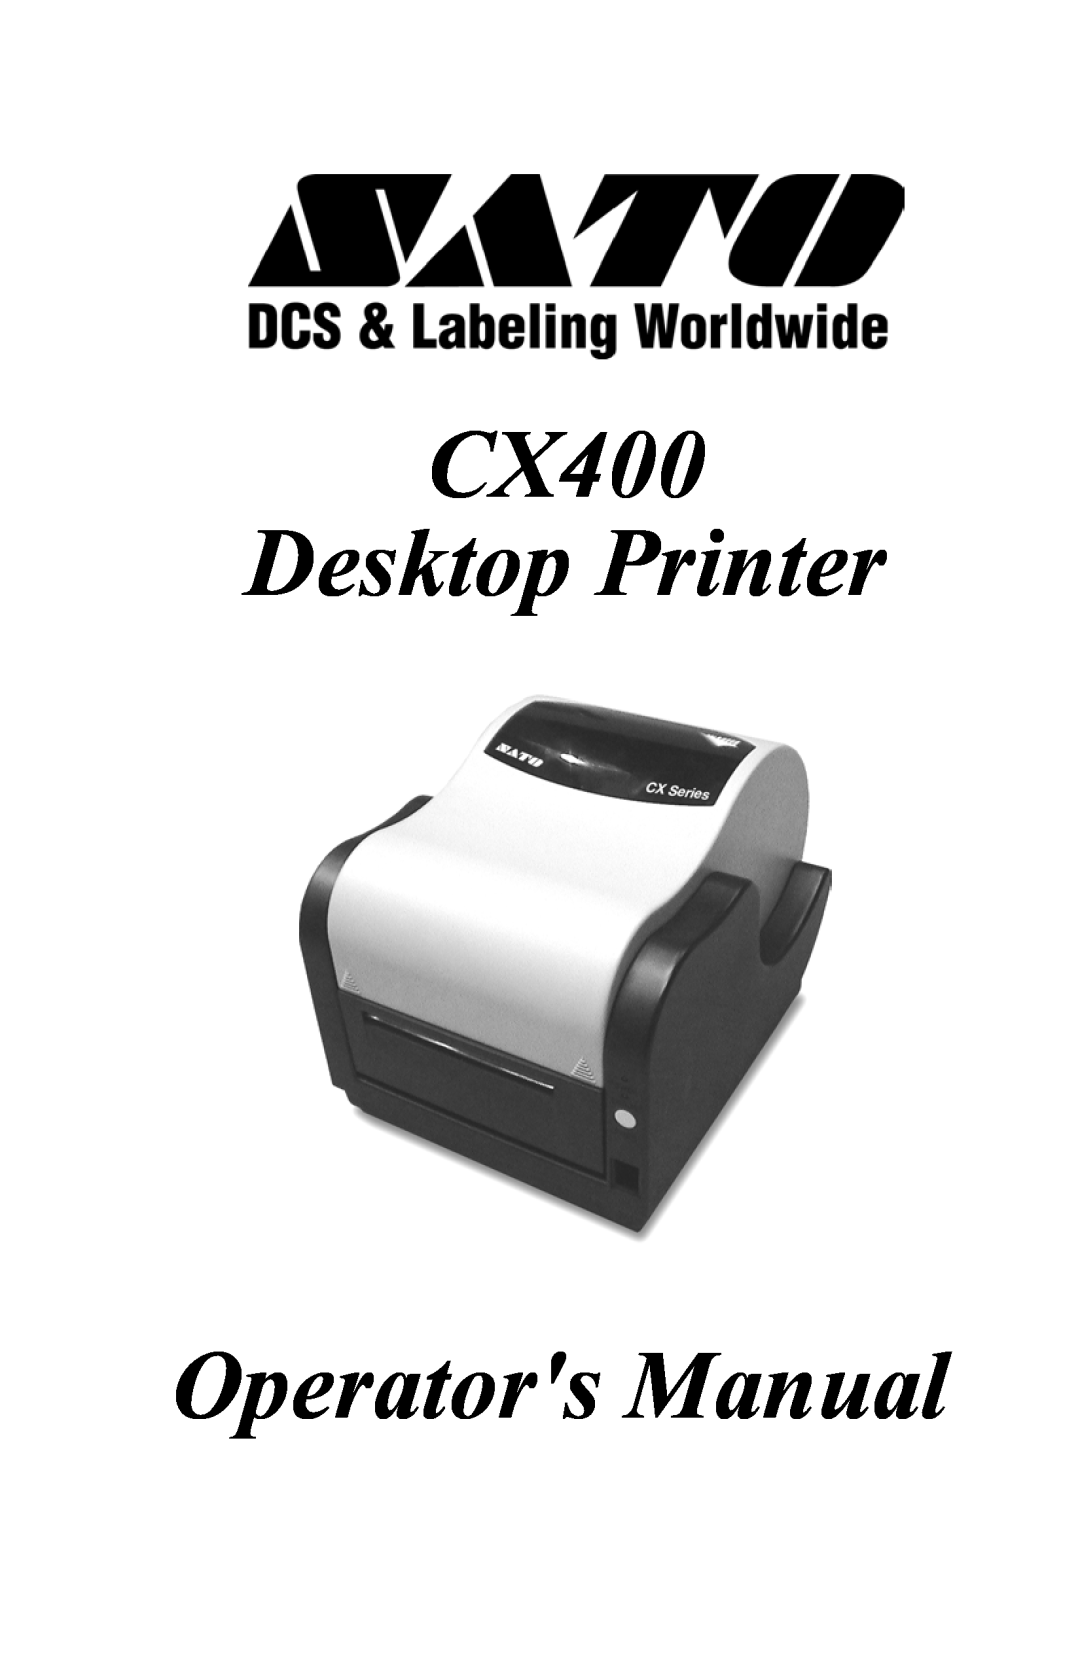 SATO manual CX400 Desktop Printer, Operators Manual 